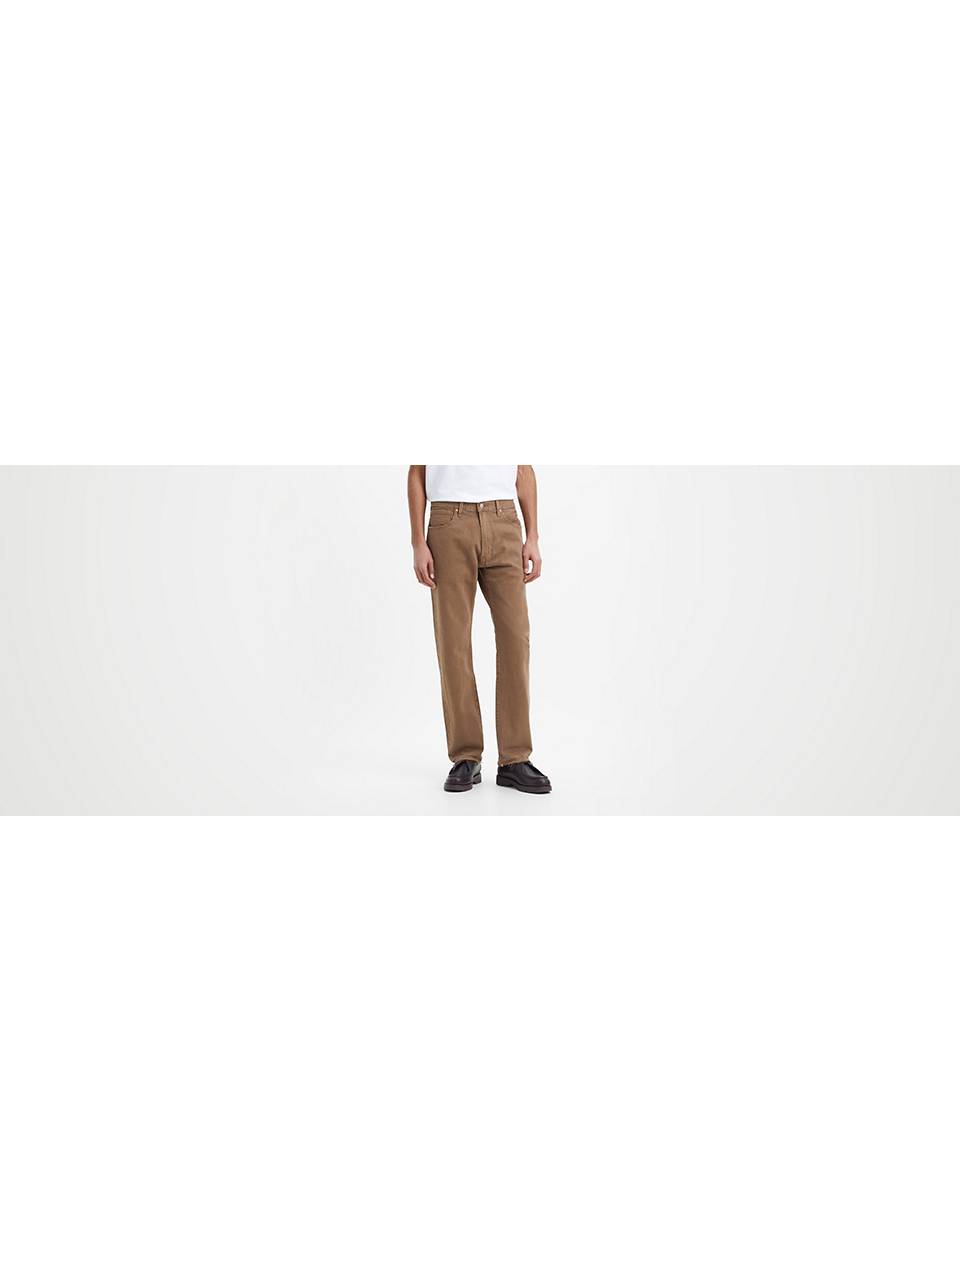 Men's Jeans Sale: Shop Men's Pants Sale Styles & More | Levi's® US